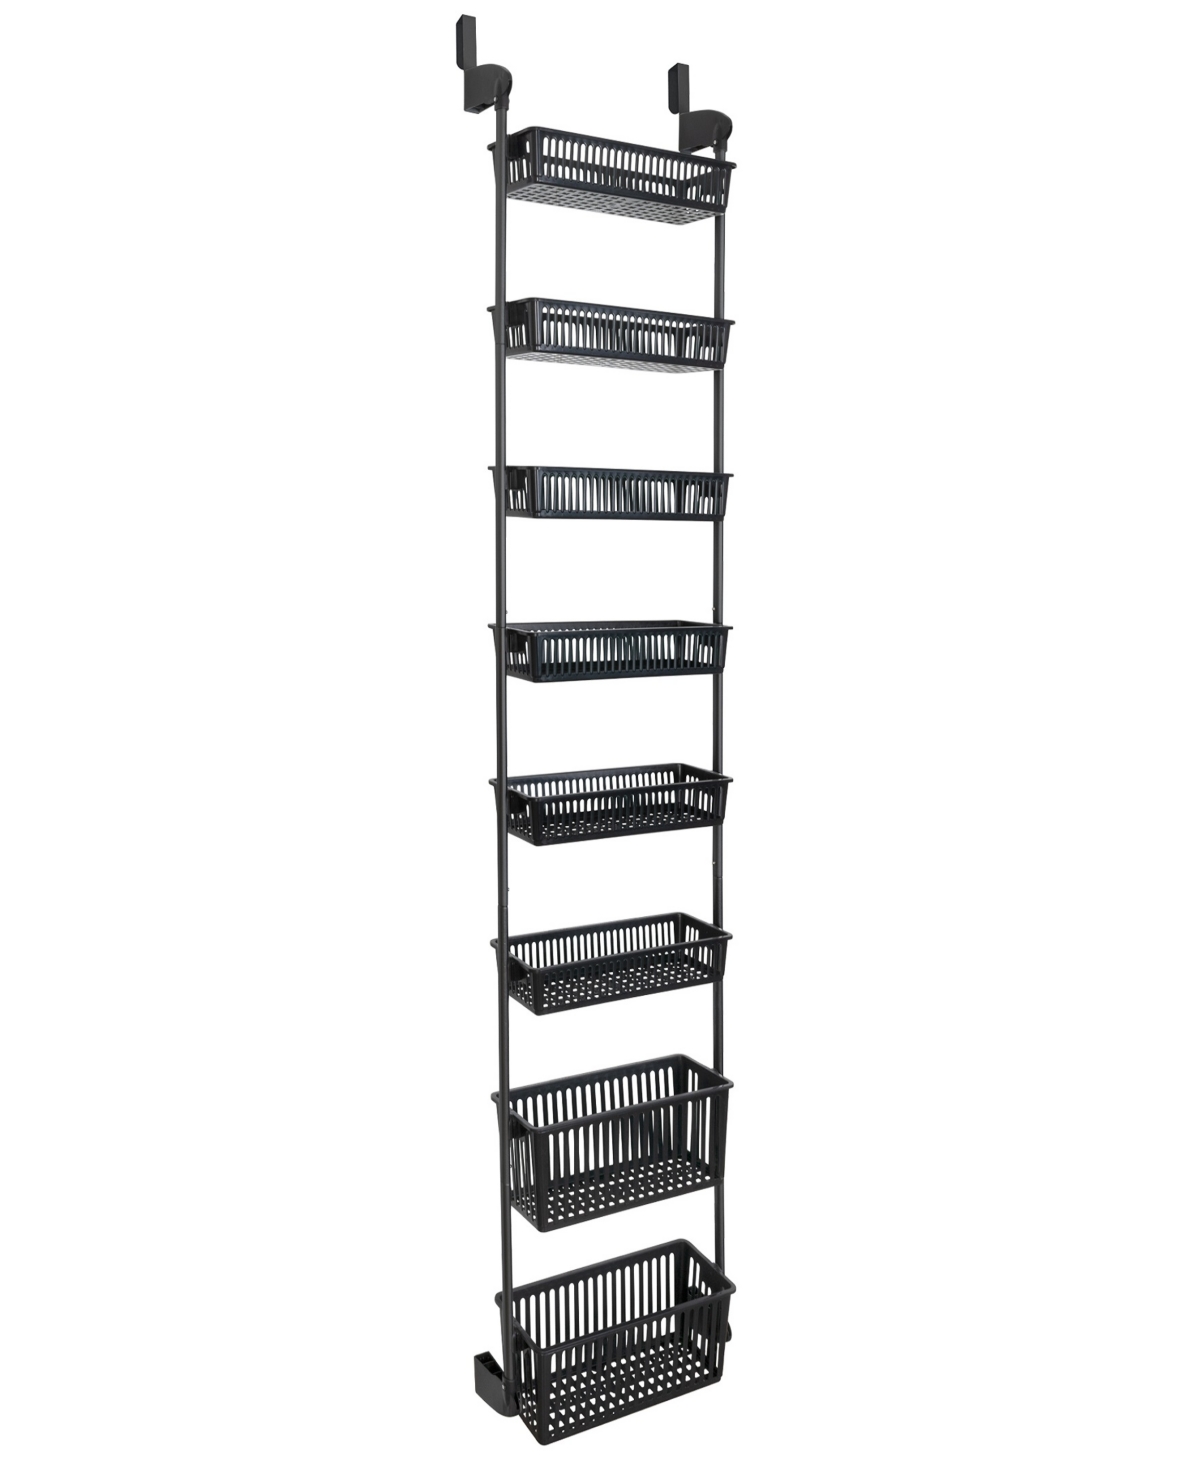 Smart Design 8-tier Over-the-door Hanging Pantry Organizer In All Black